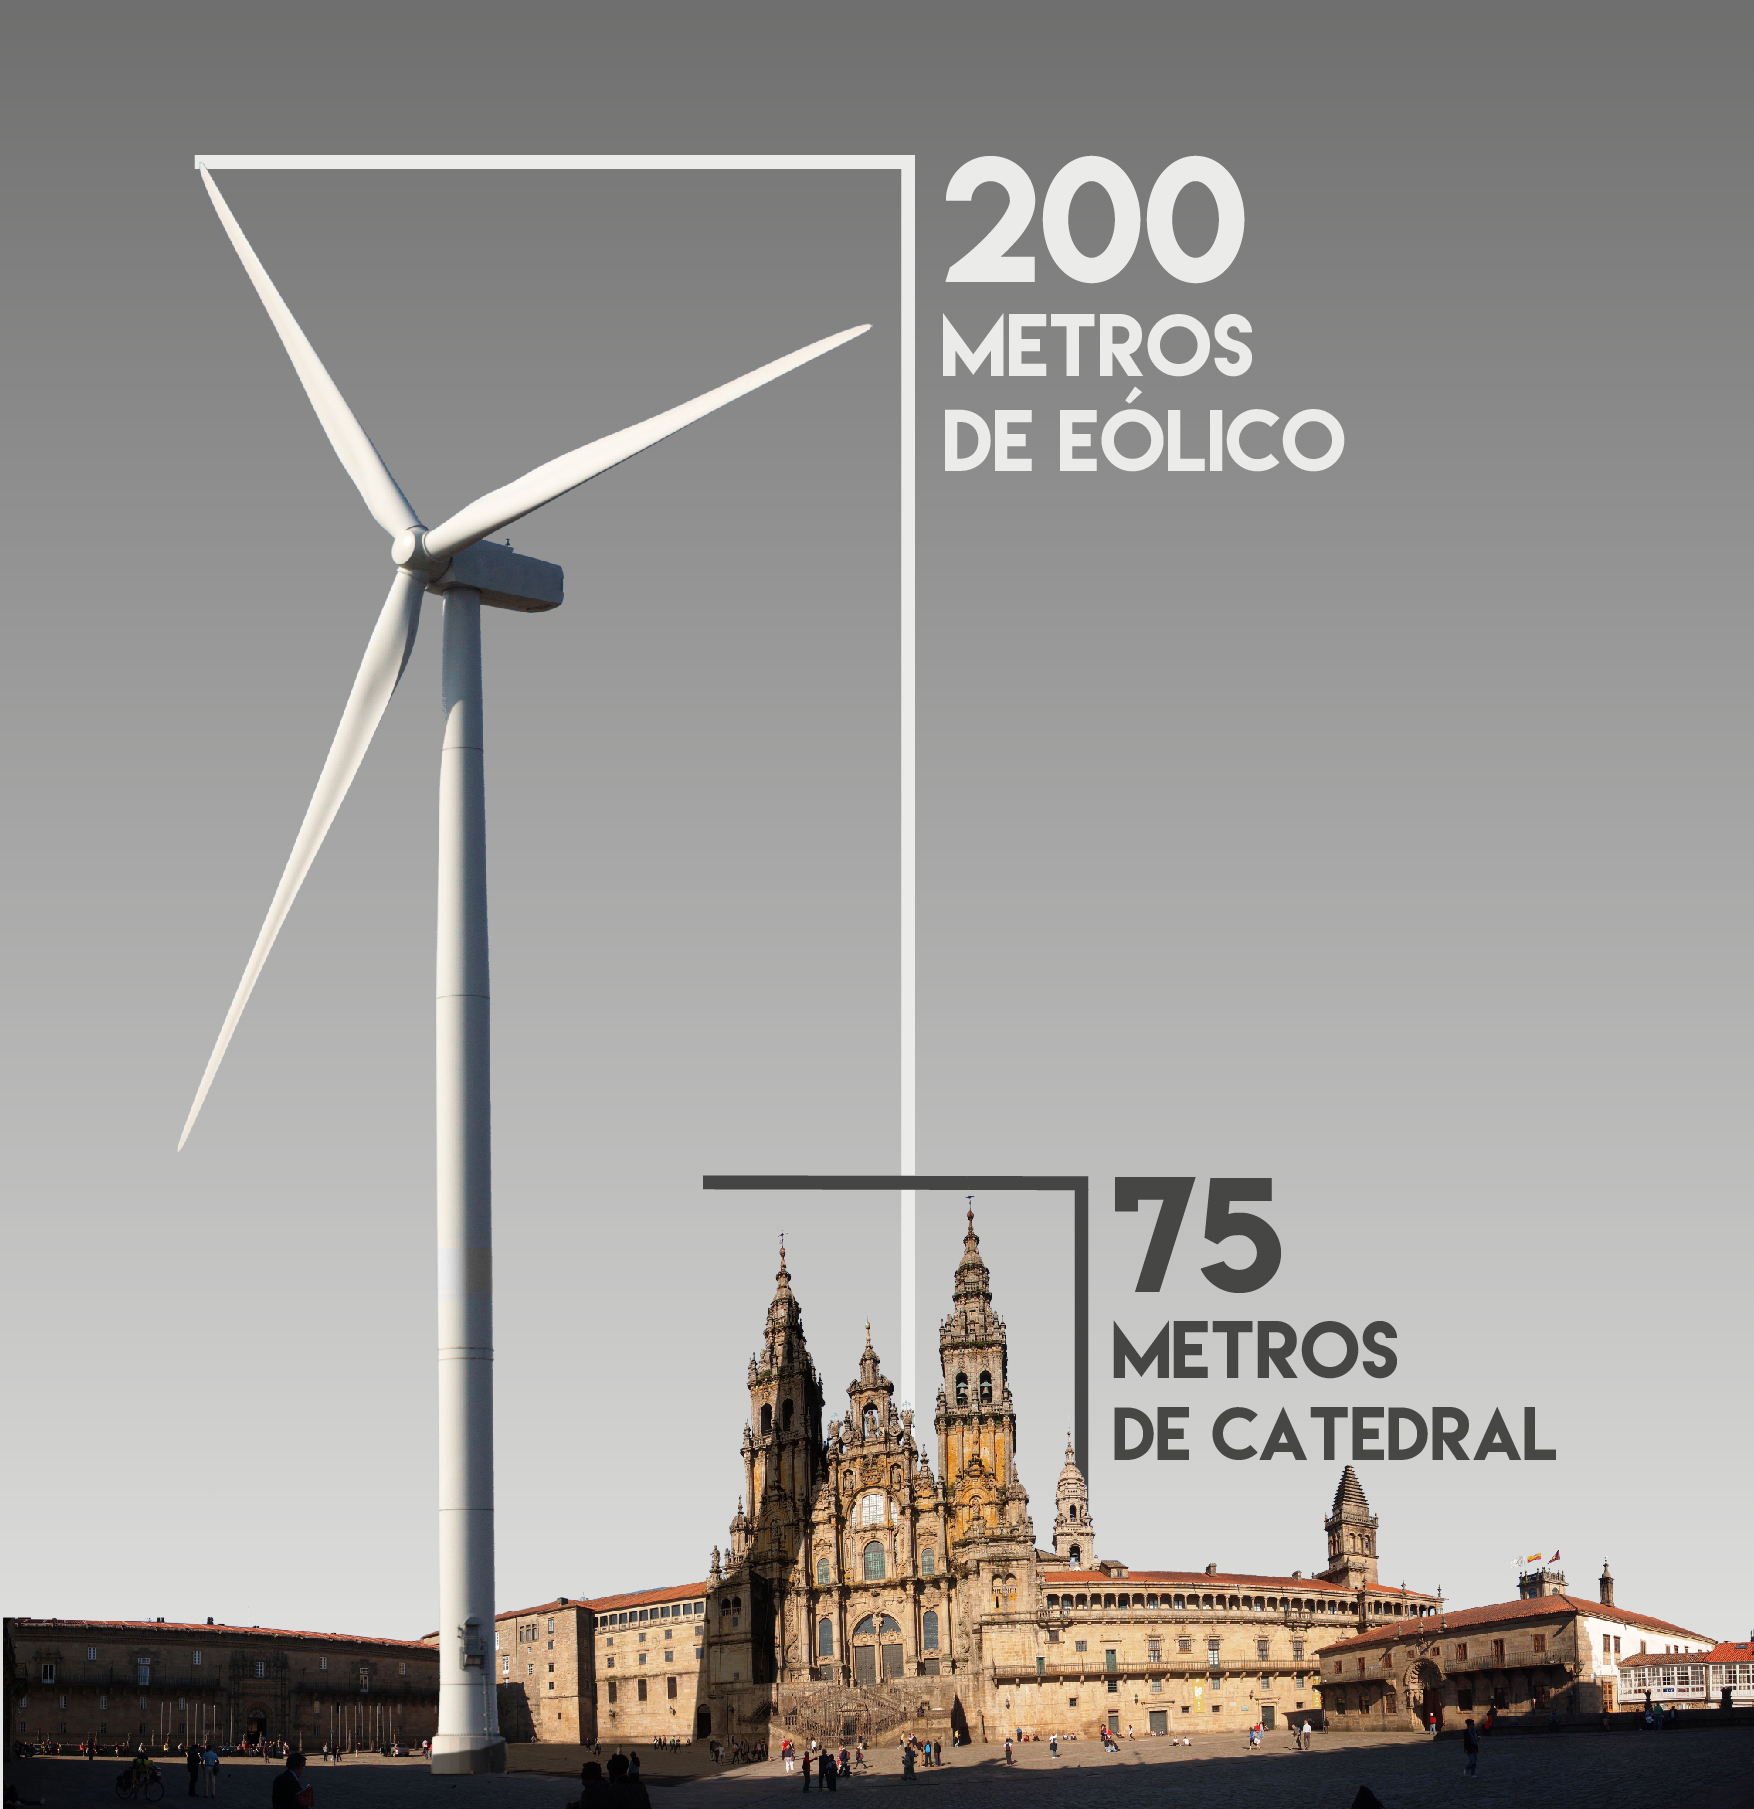 Faise a comparación dun aeroxenerador de 200 metros ca Catedral de Santiago, que mide 75, véndose claramente que é máis de tres veces esta.